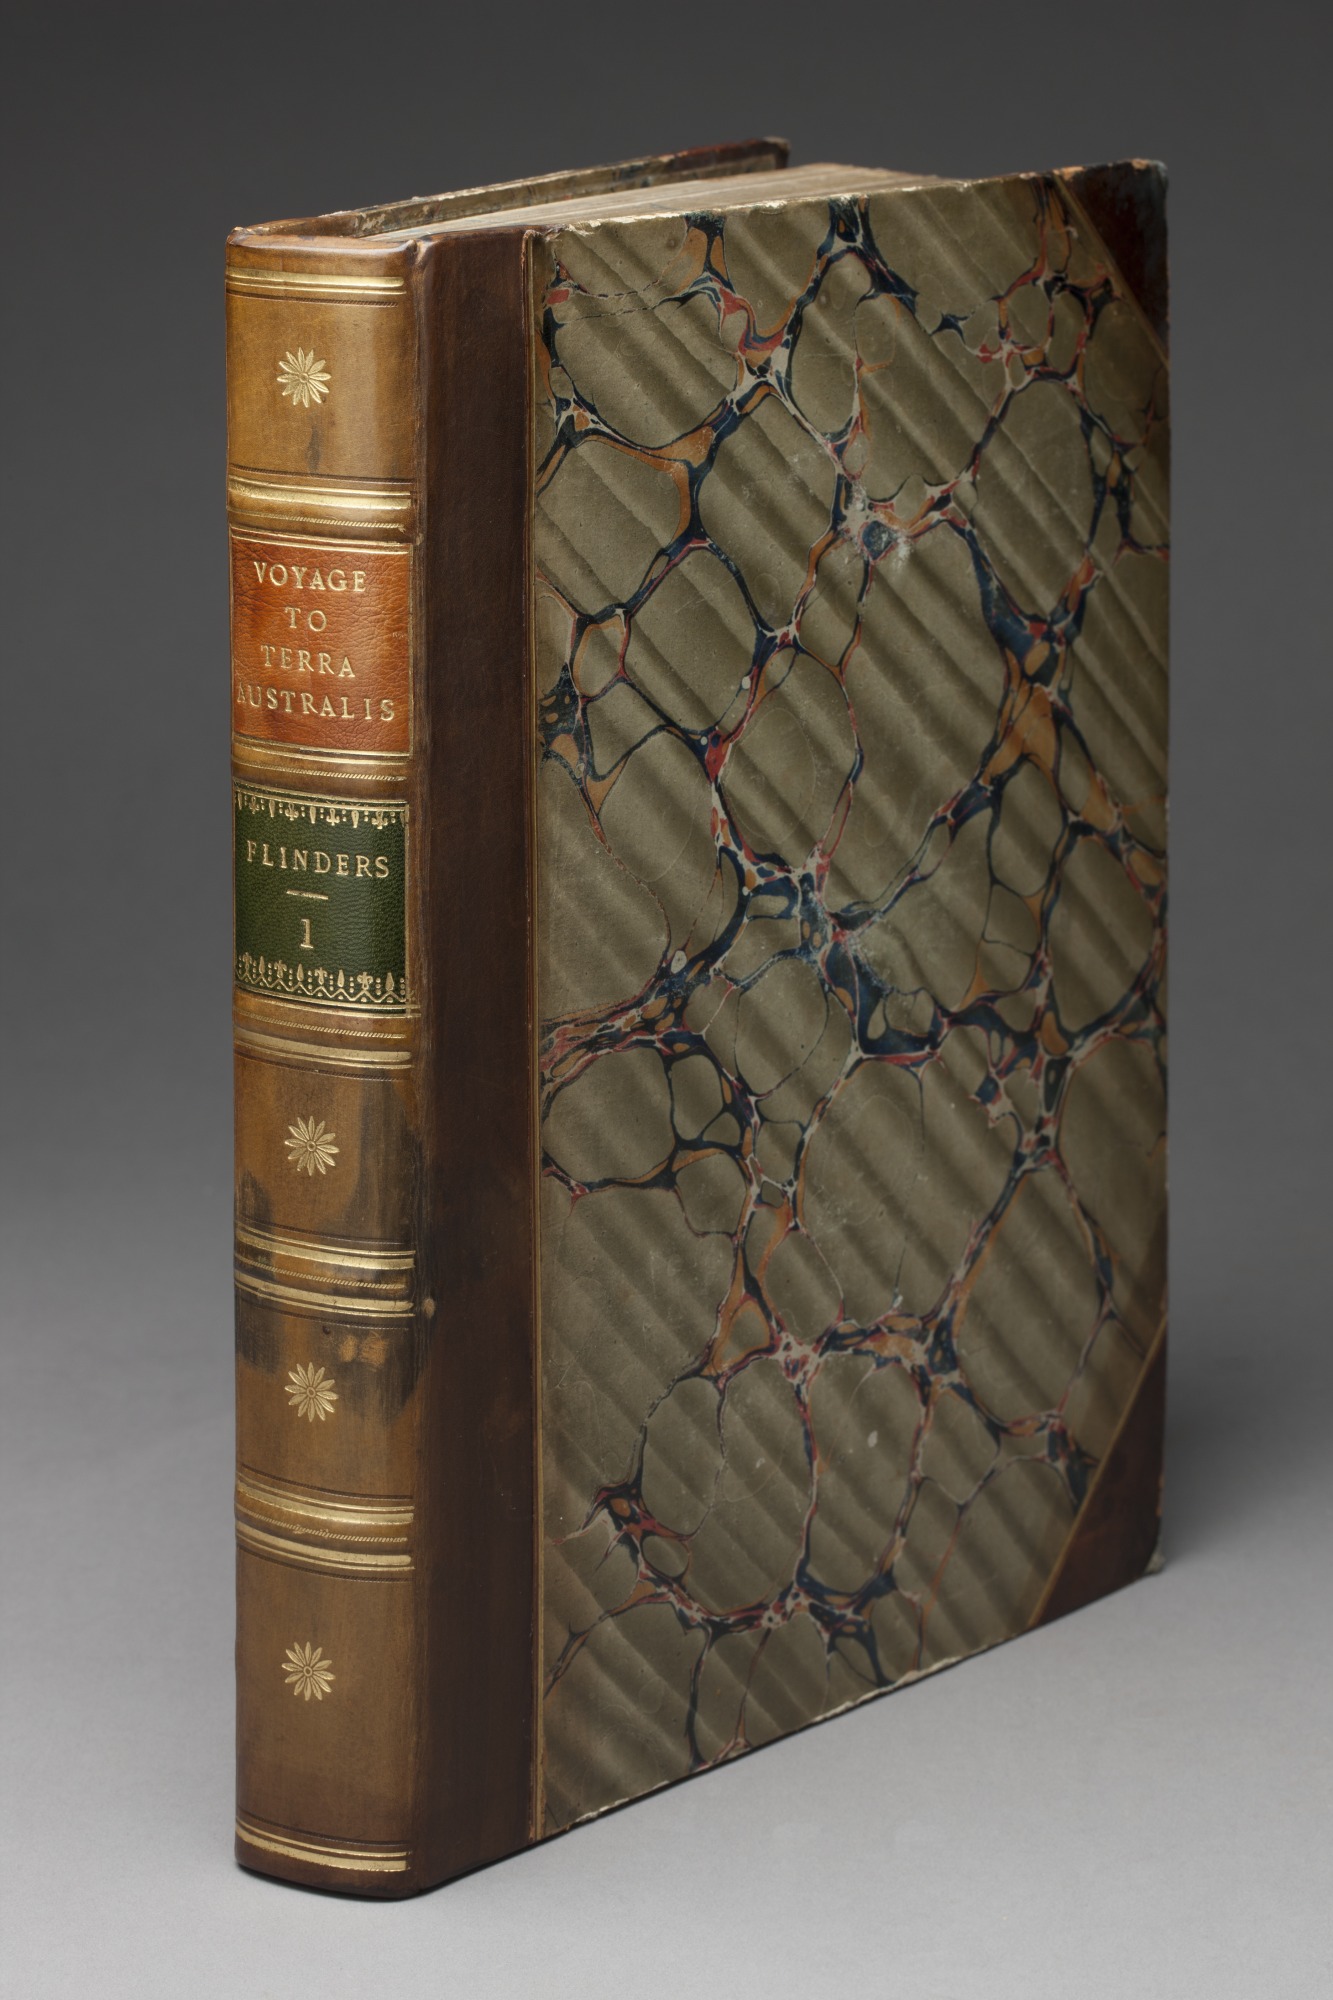 A Voyage to Terra Australis, volume 1, by Matthew Flinders, 1814. 